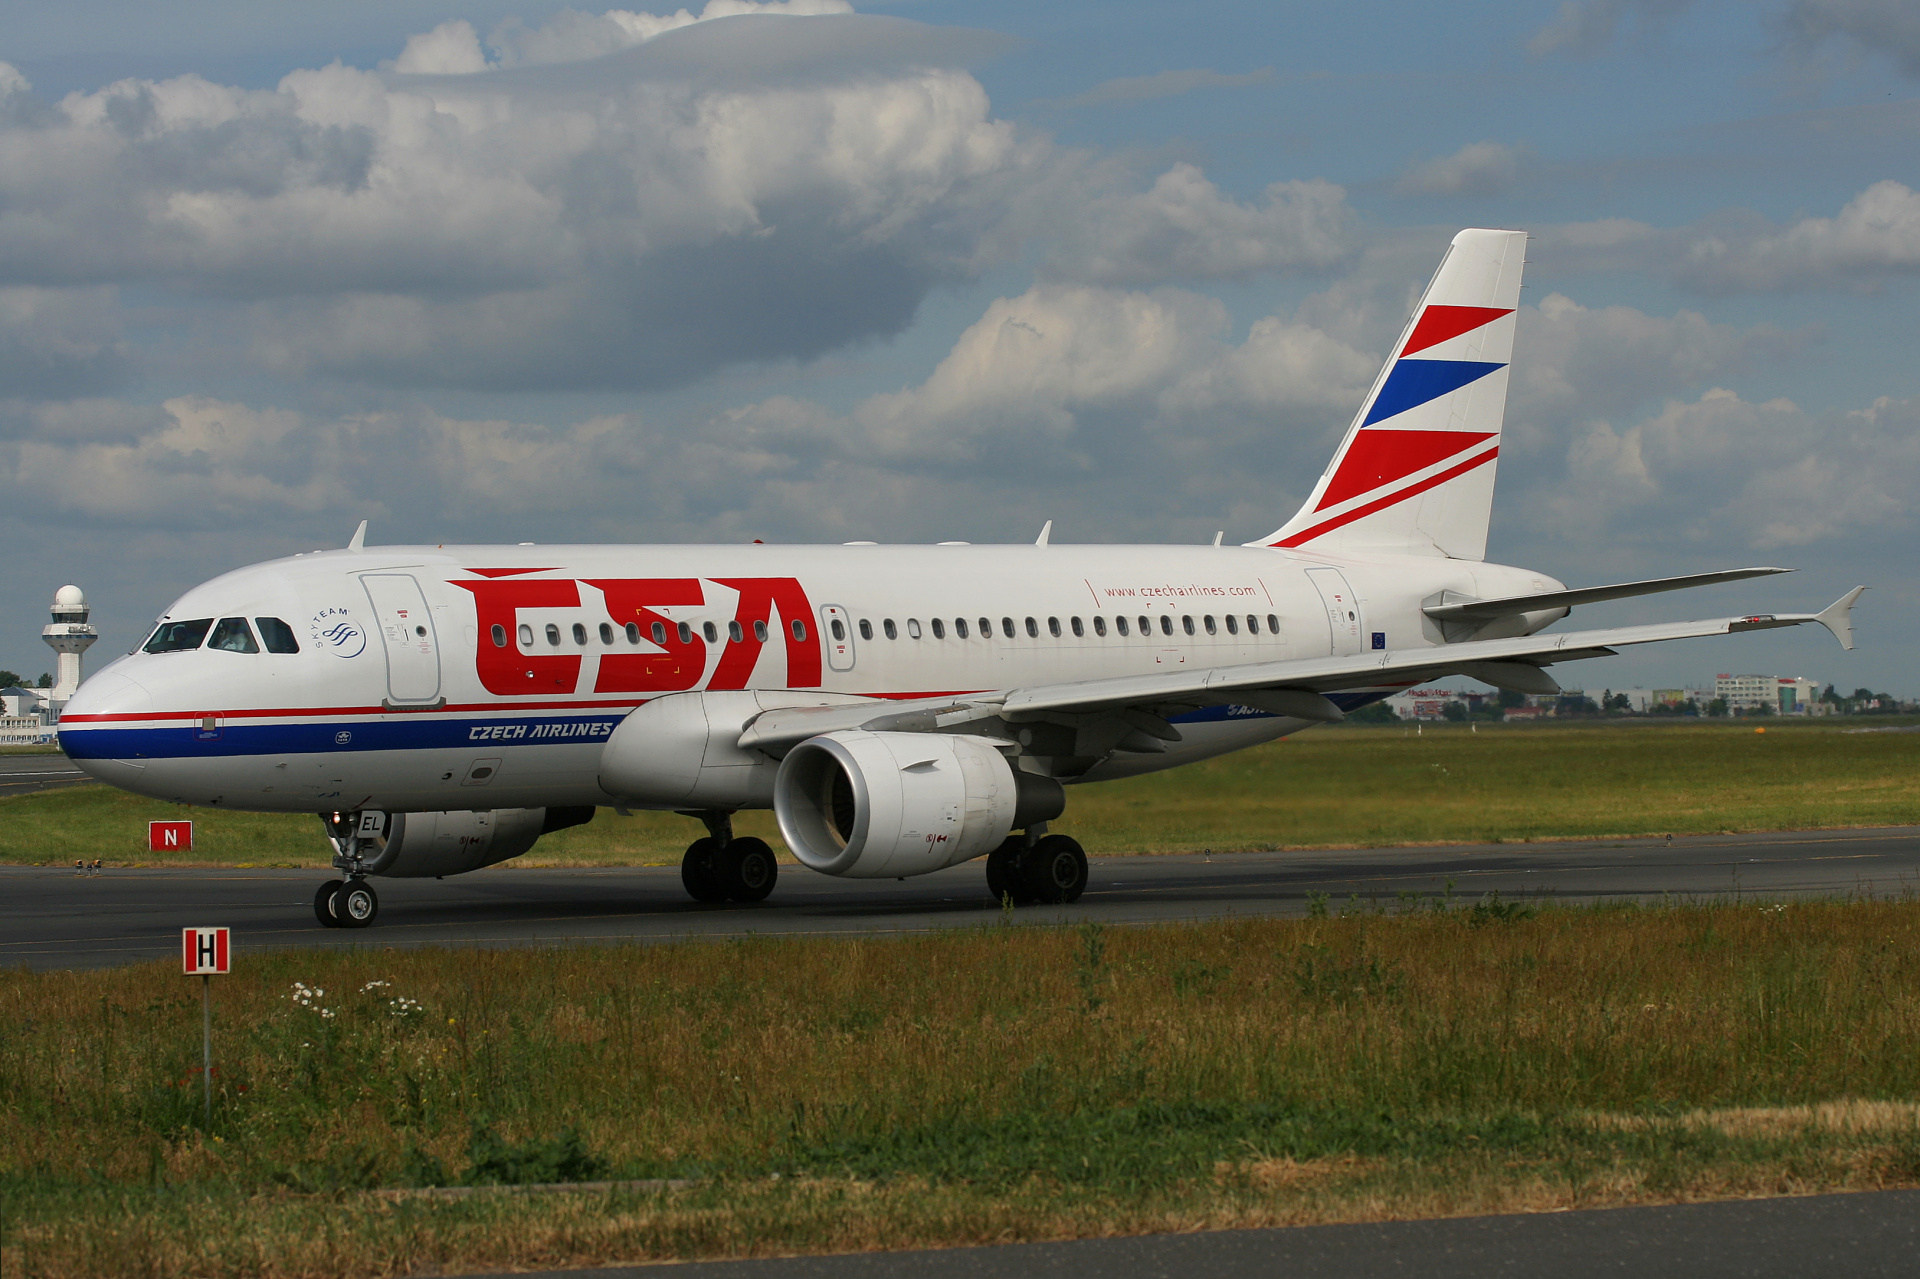 OK-MEL, CSA Czech Airlines (Aircraft » EPWA Spotting » Airbus A319-100 » CSA Czech Airlines)